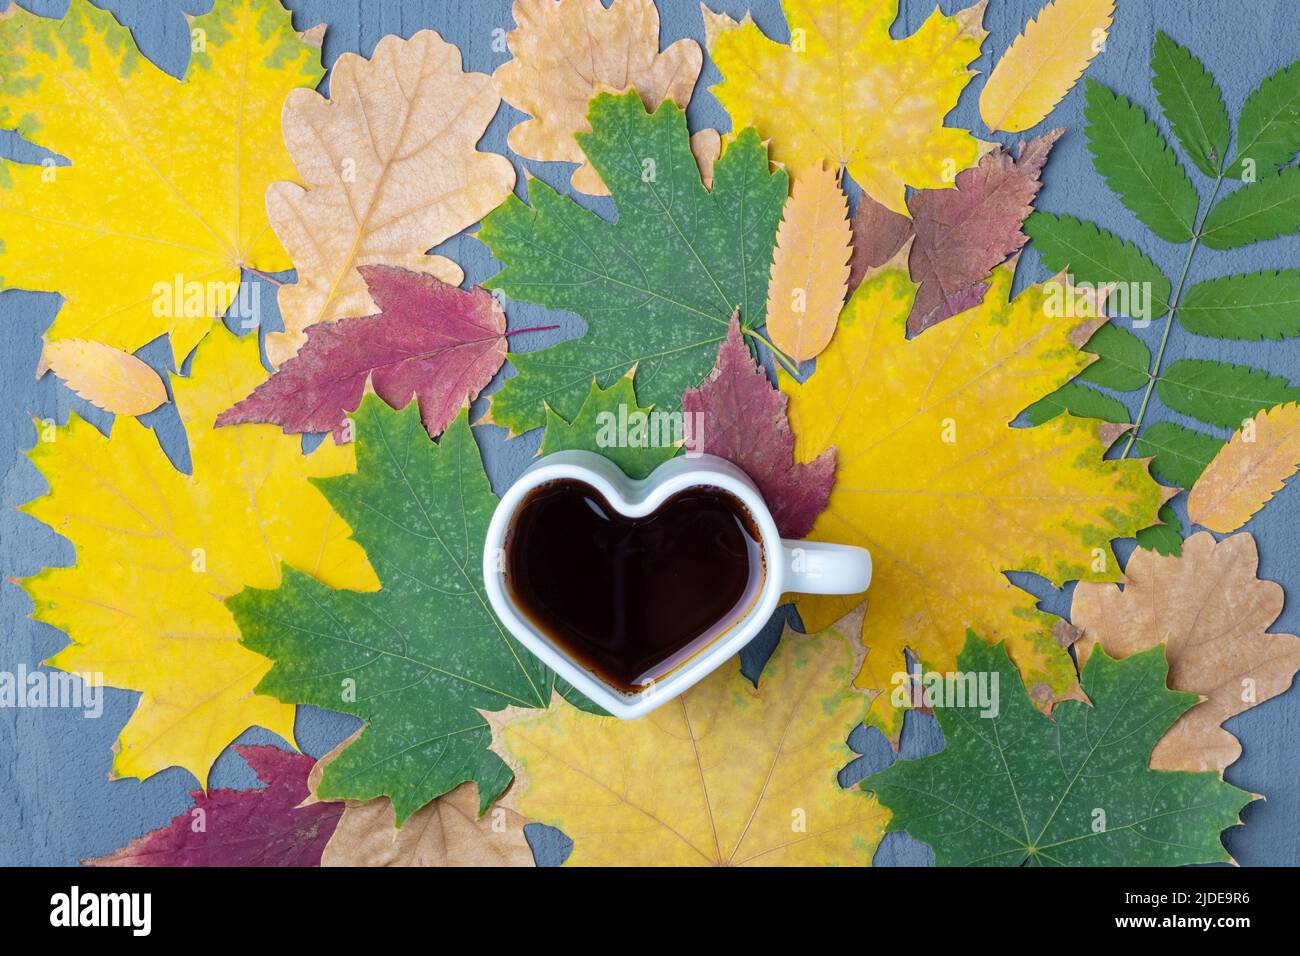 Weißer Becher in Herzform mit Kaffee oder Tee auf dem Hintergrund herbstlich gefallener trockener, farbenprächtiger Blätter, Draufsicht, flaches Lay. Herbstfrühstück. Stockfoto